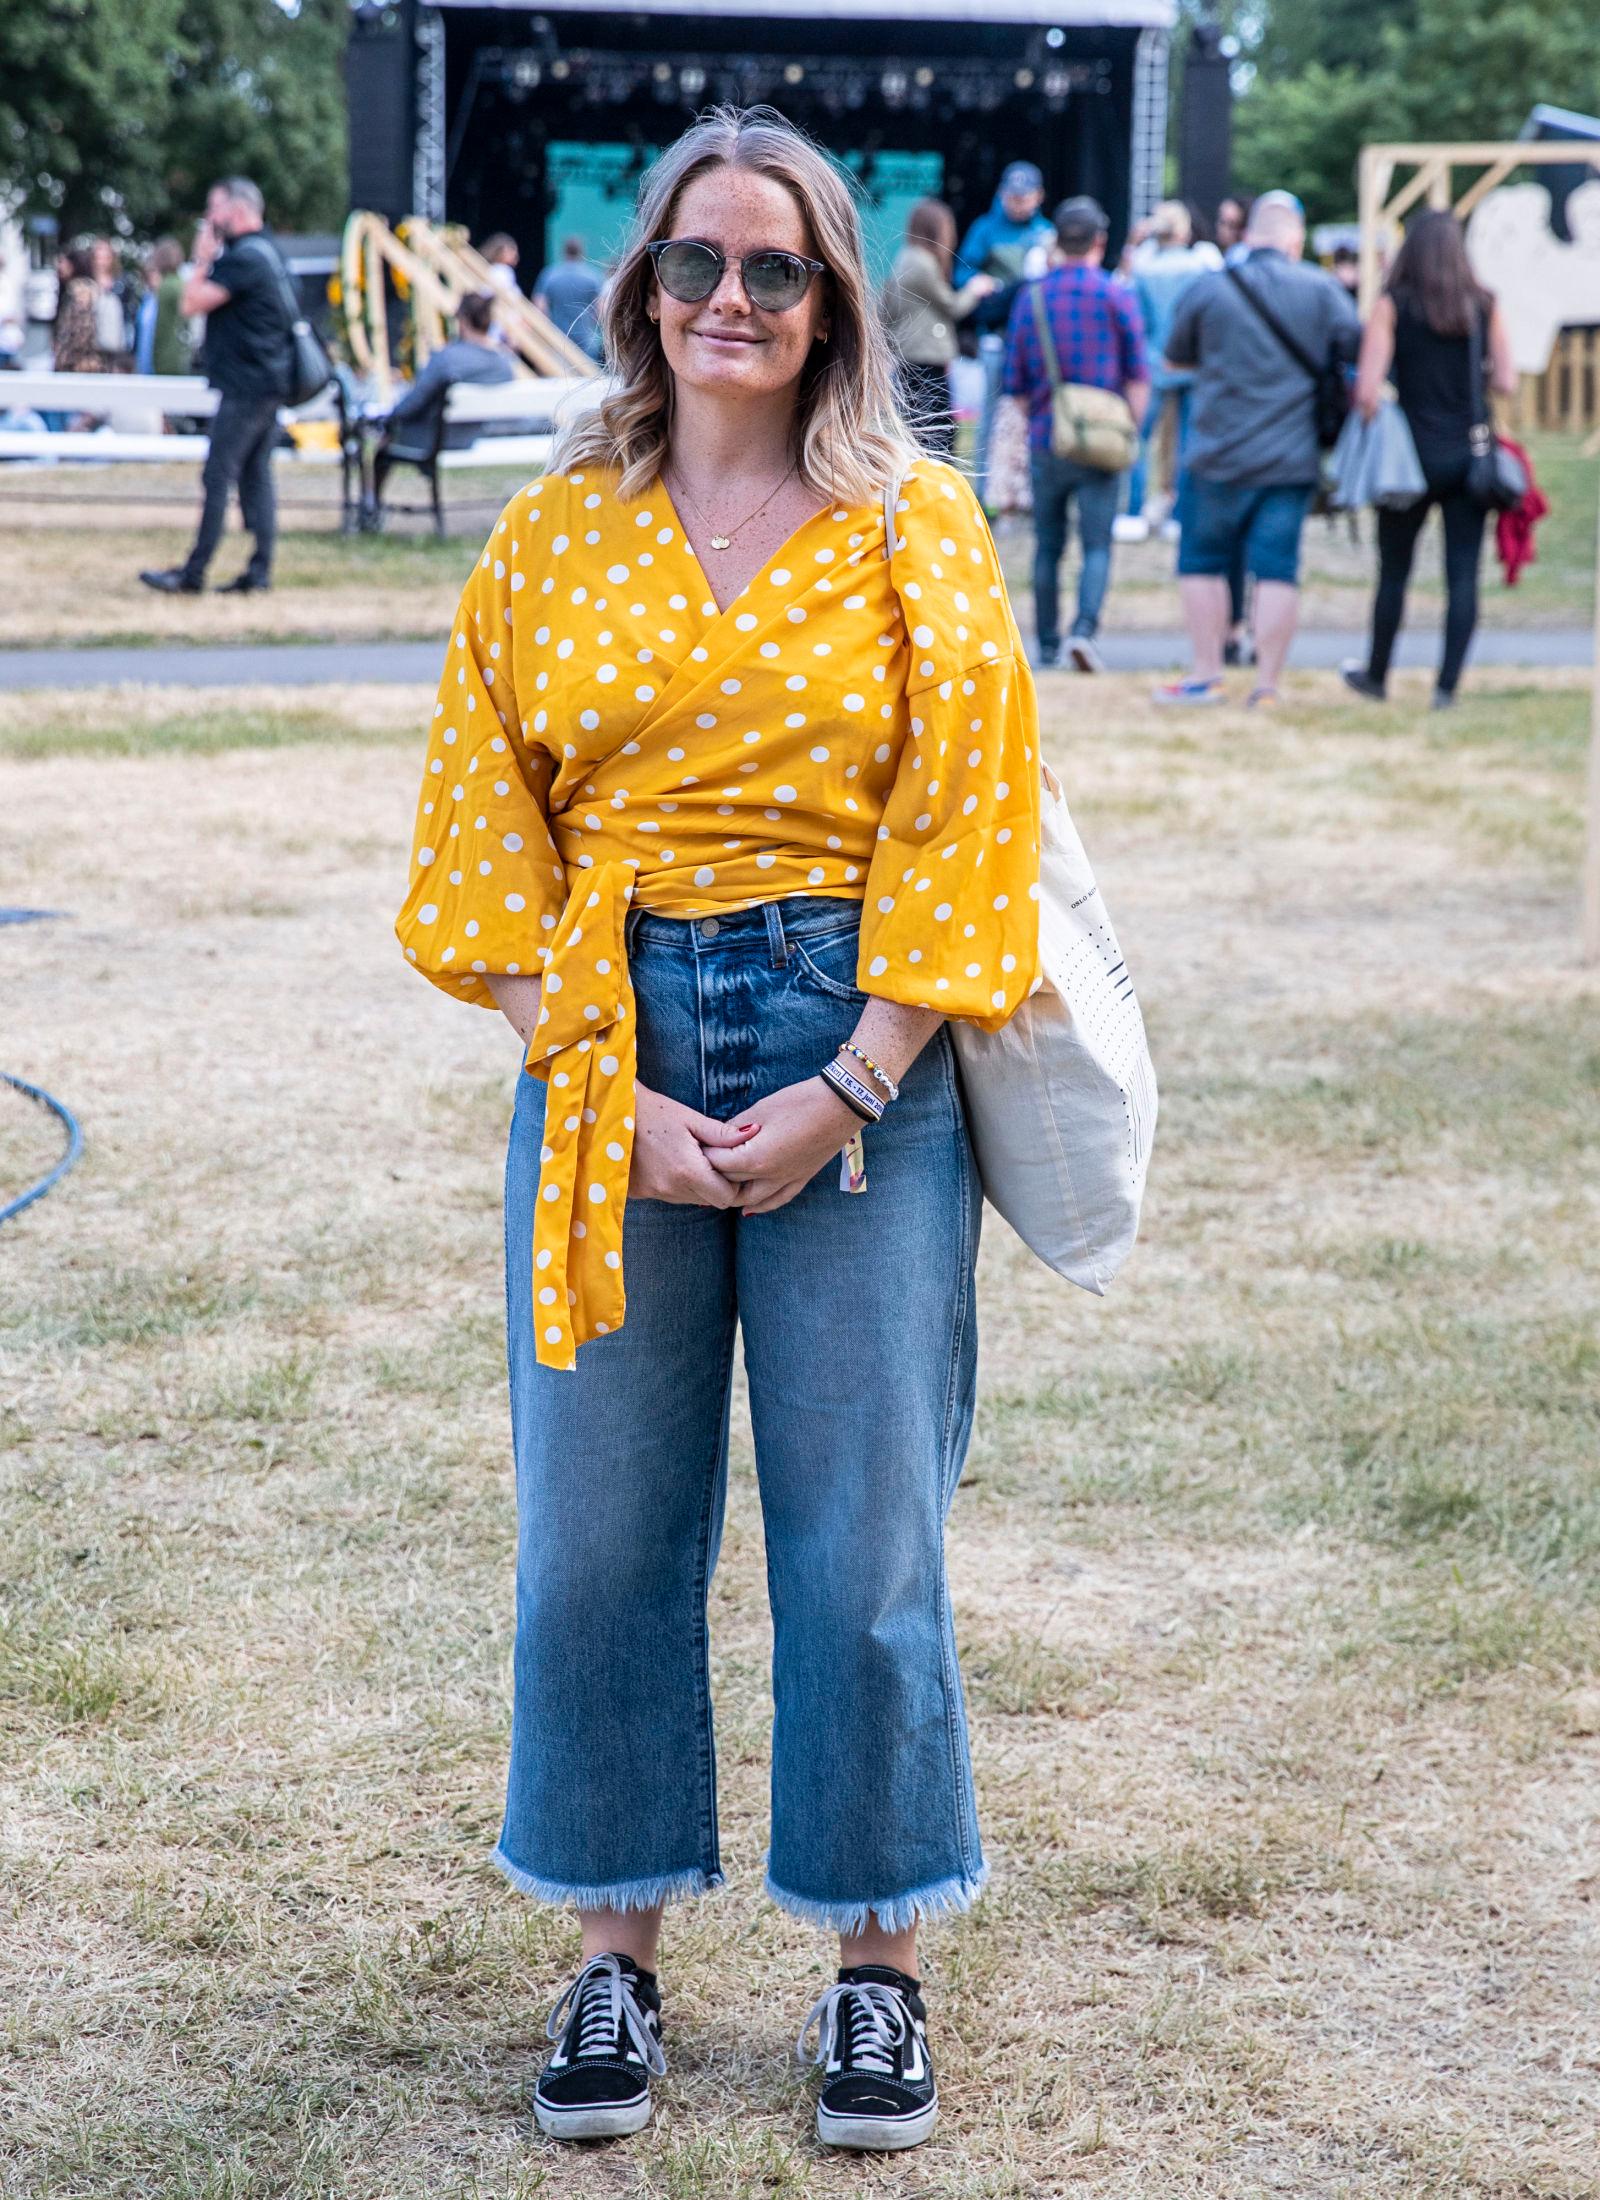 GULT ER KULT: Veronica St. Hilaire hadde på omslagstopp og jeans på Piknik i Parken. Foto: Hallgeir Vågenes/VG